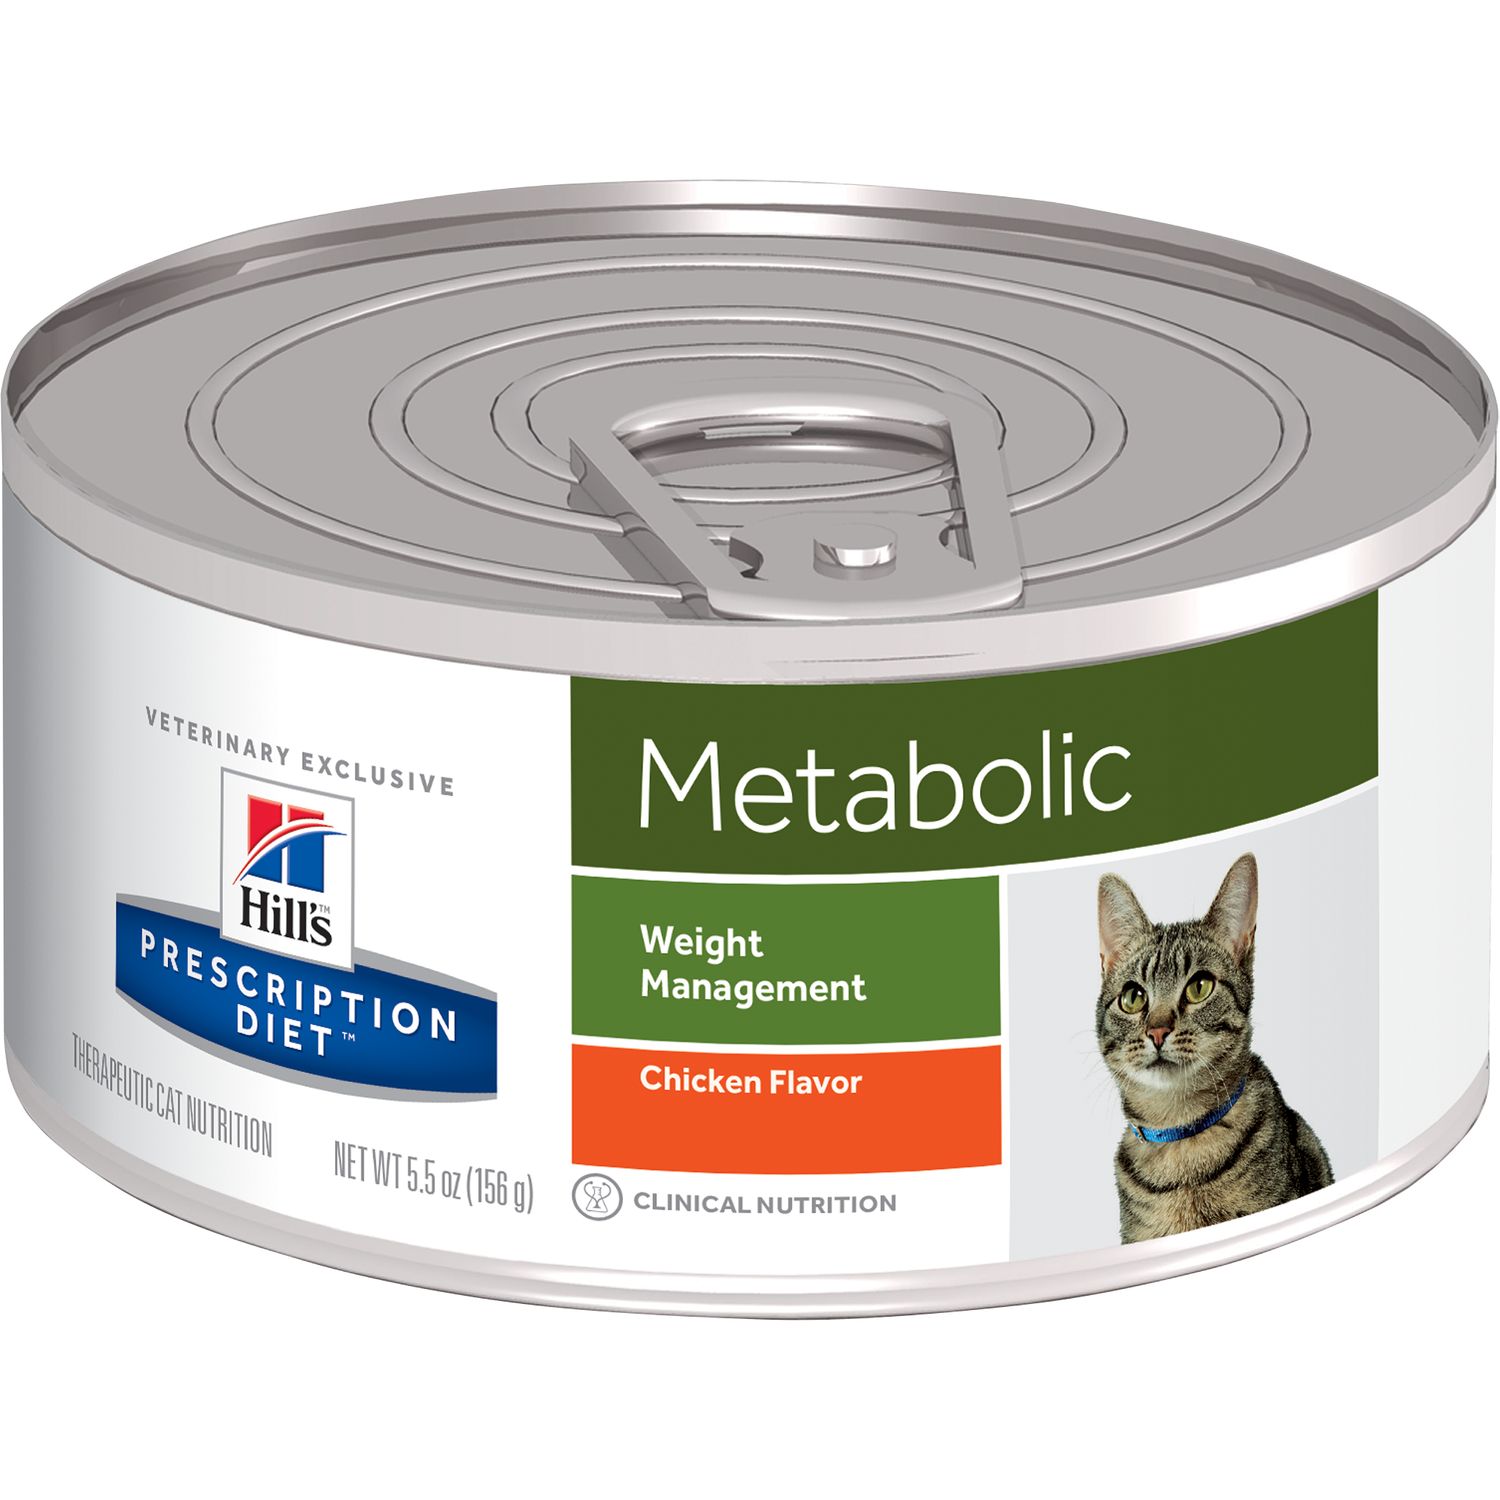 מטבוליק לחתול שימורים 156 גרם METABOLIC